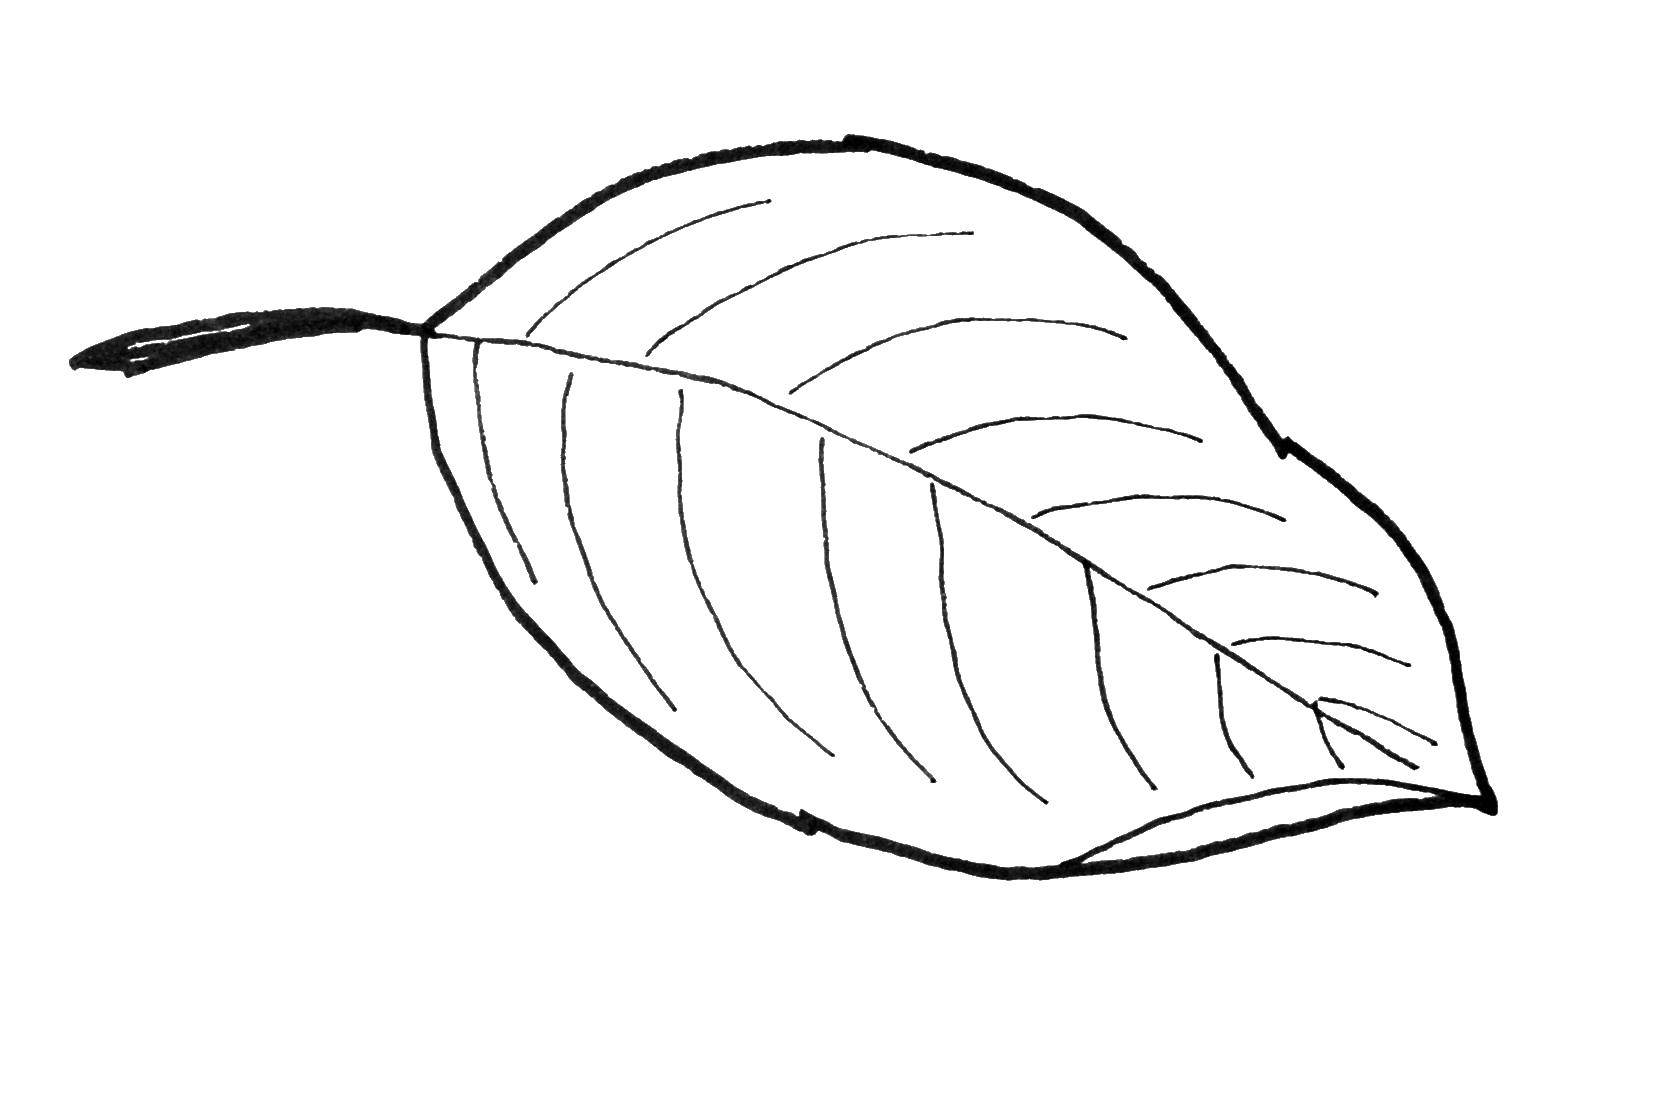 Название: Раскраска Листок с дерева. Категория: Контуры листьев деревьев. Теги: листок, листья.